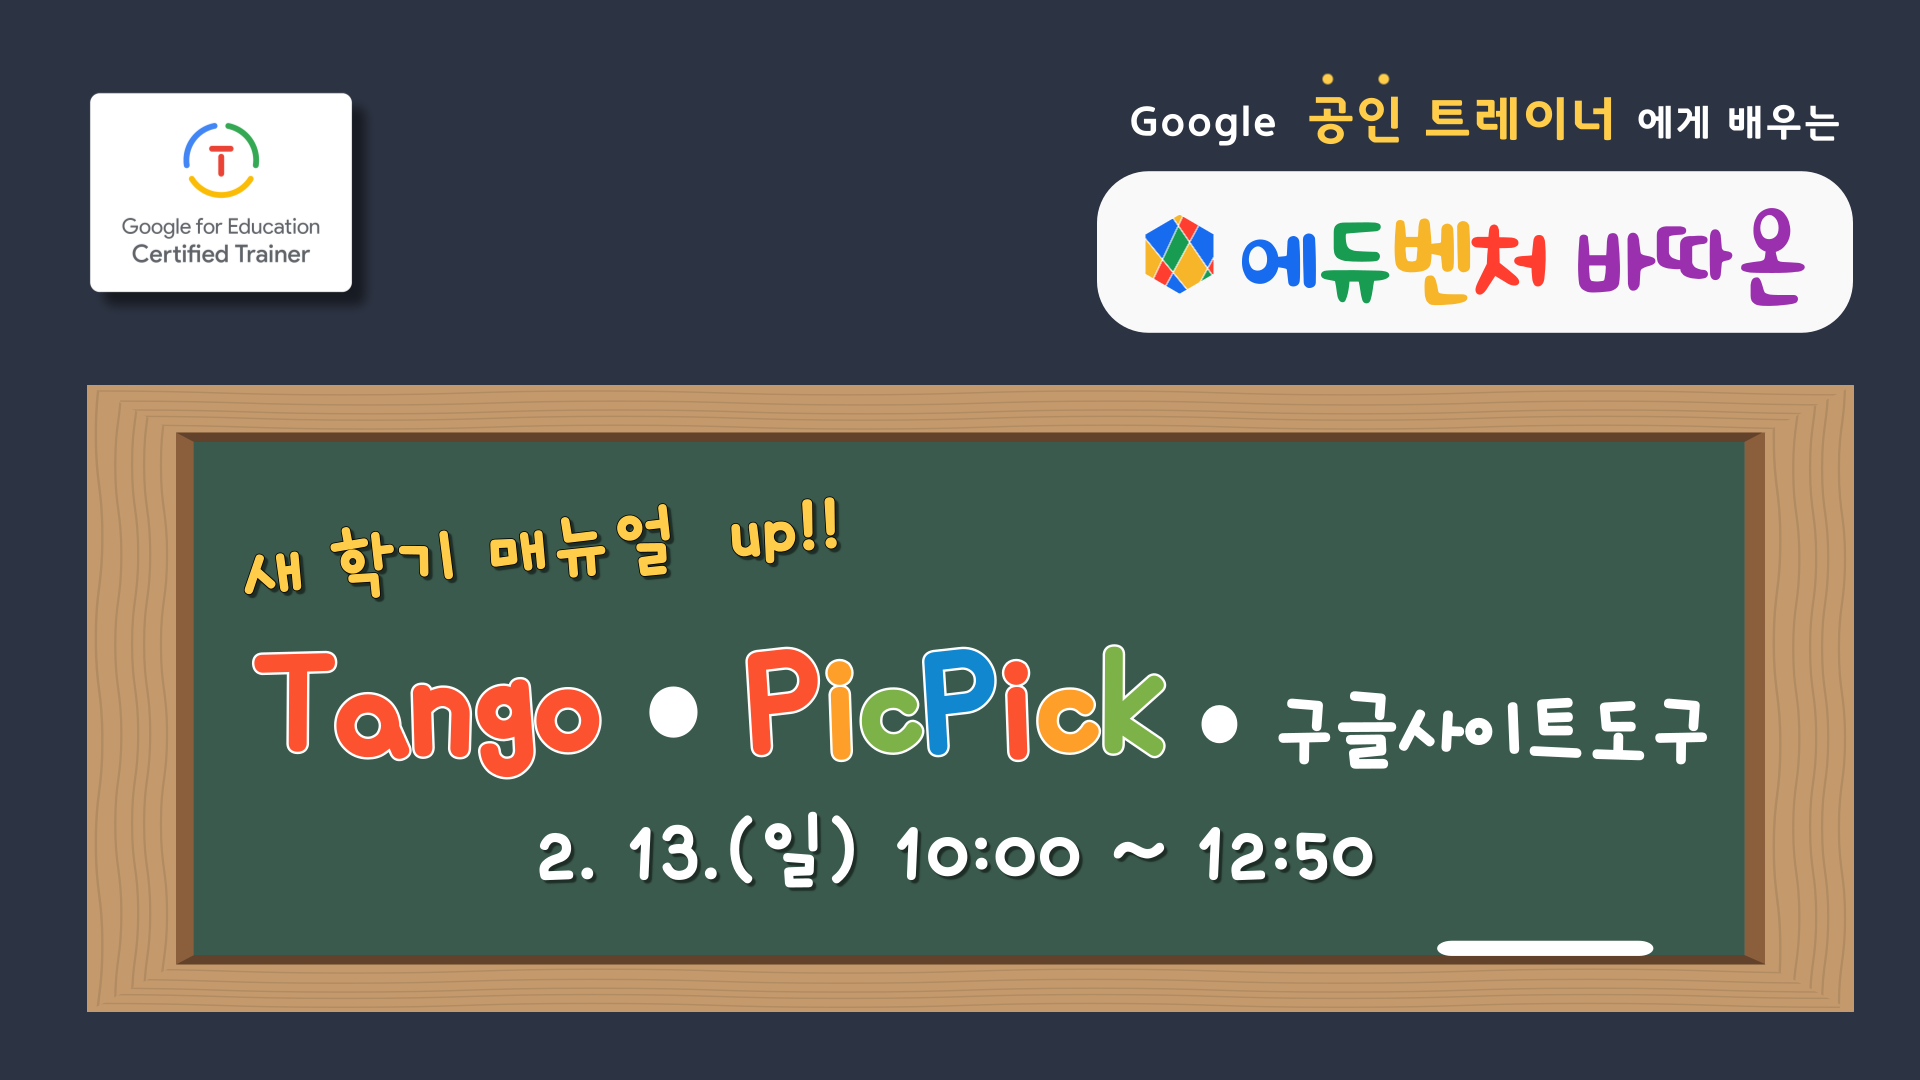 'Tango • PicPick • 구글사이트도구' 새 학기 매뉴얼 up!